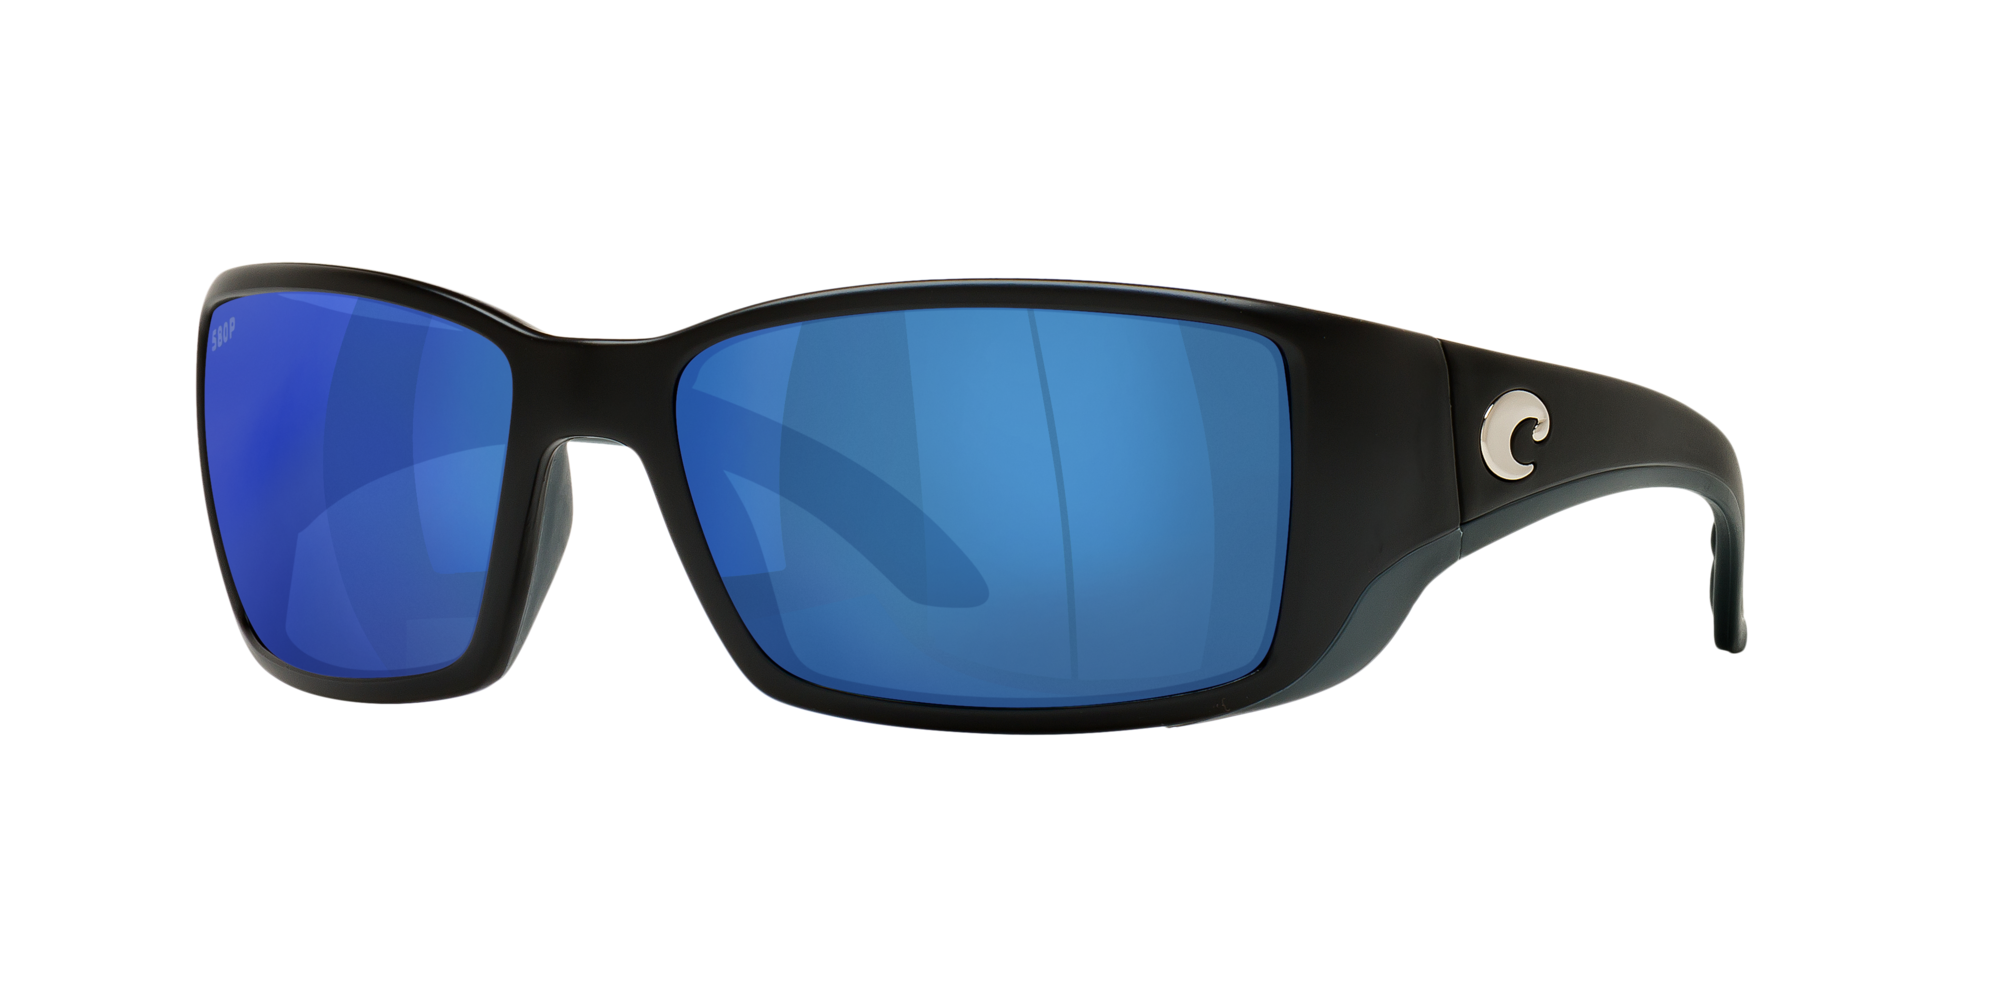 Buy Costa Del Mar Sunglasses Flash Sales, 55% OFF | www.hcb.cat